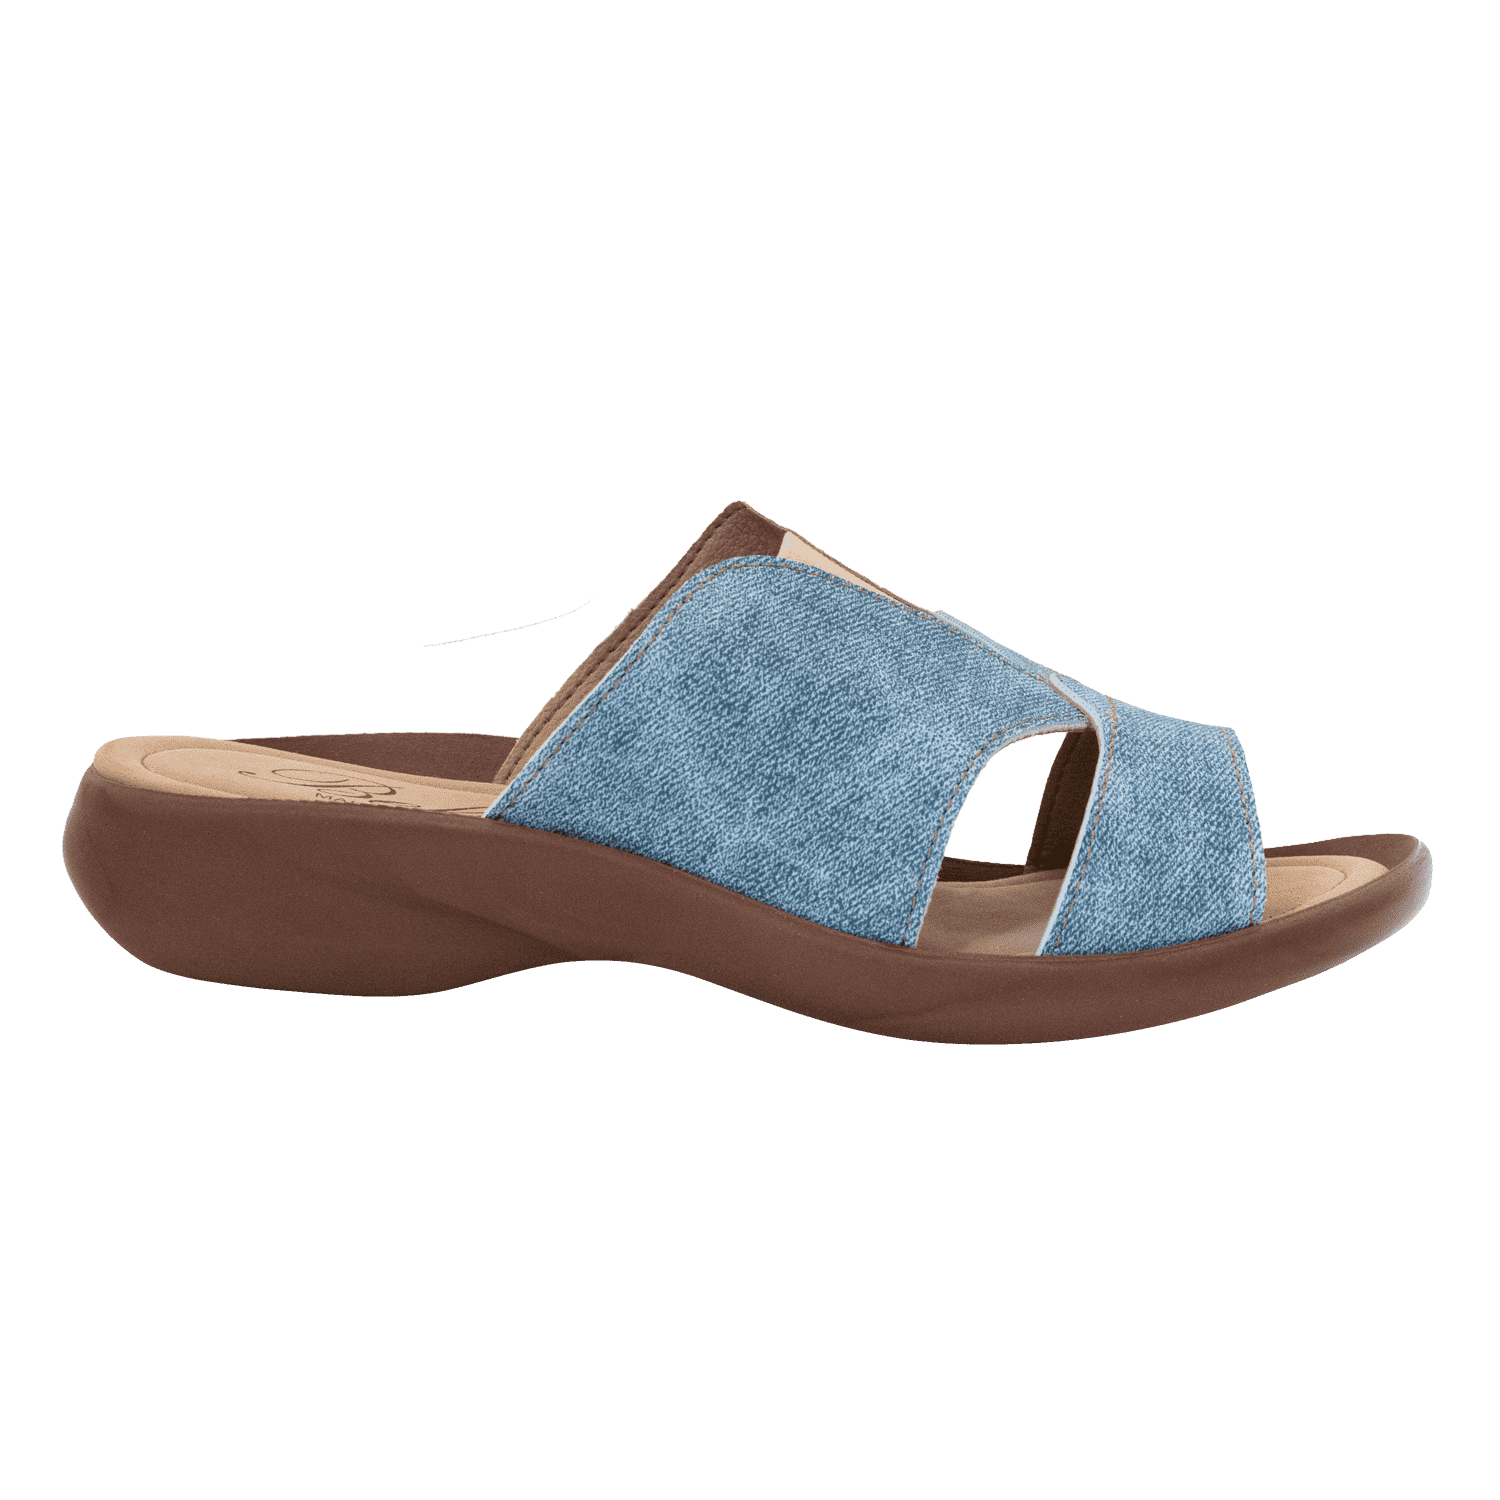 Women's summer flip-flops BELSTA of eco leather - 3